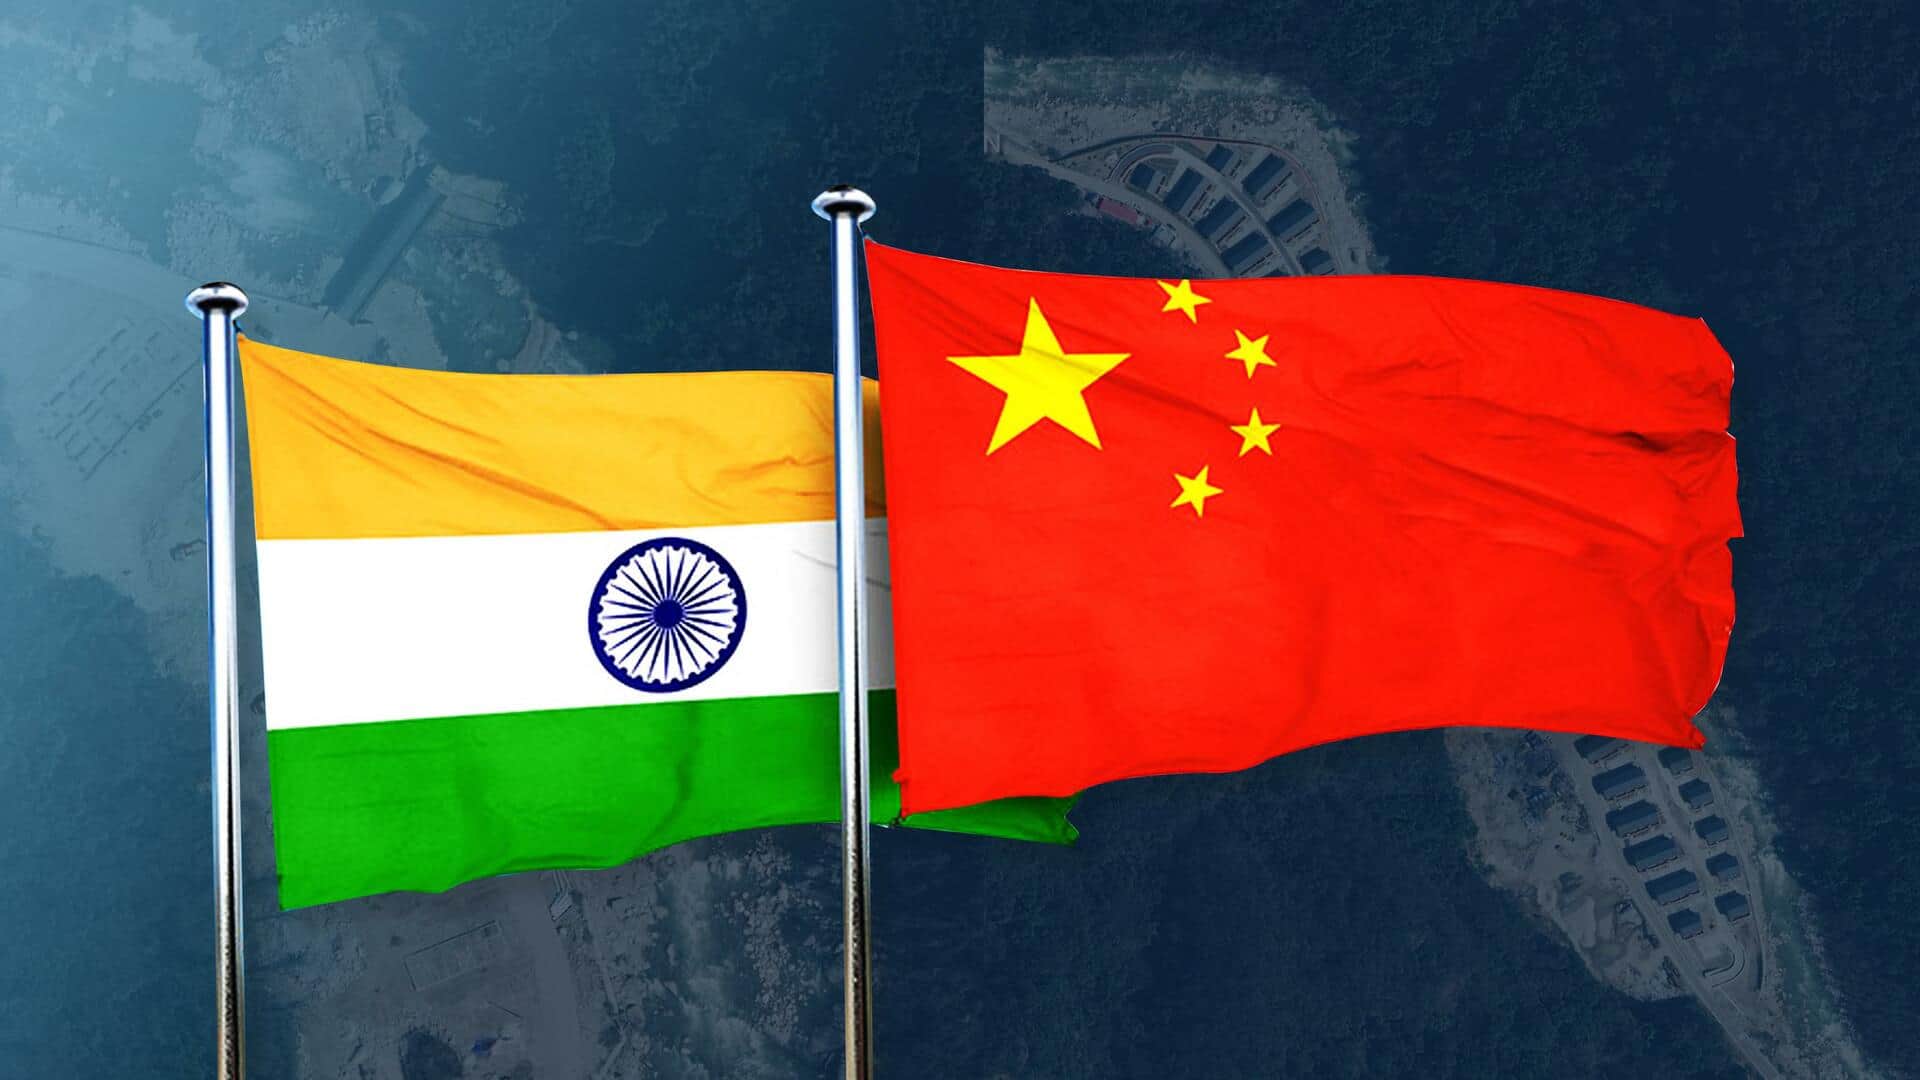 चीन के 11 जगहों के नाम बदलने पर भारत की प्रतिक्रिया, कहा- अरुणाचल हमारा अभिन्न अंग      